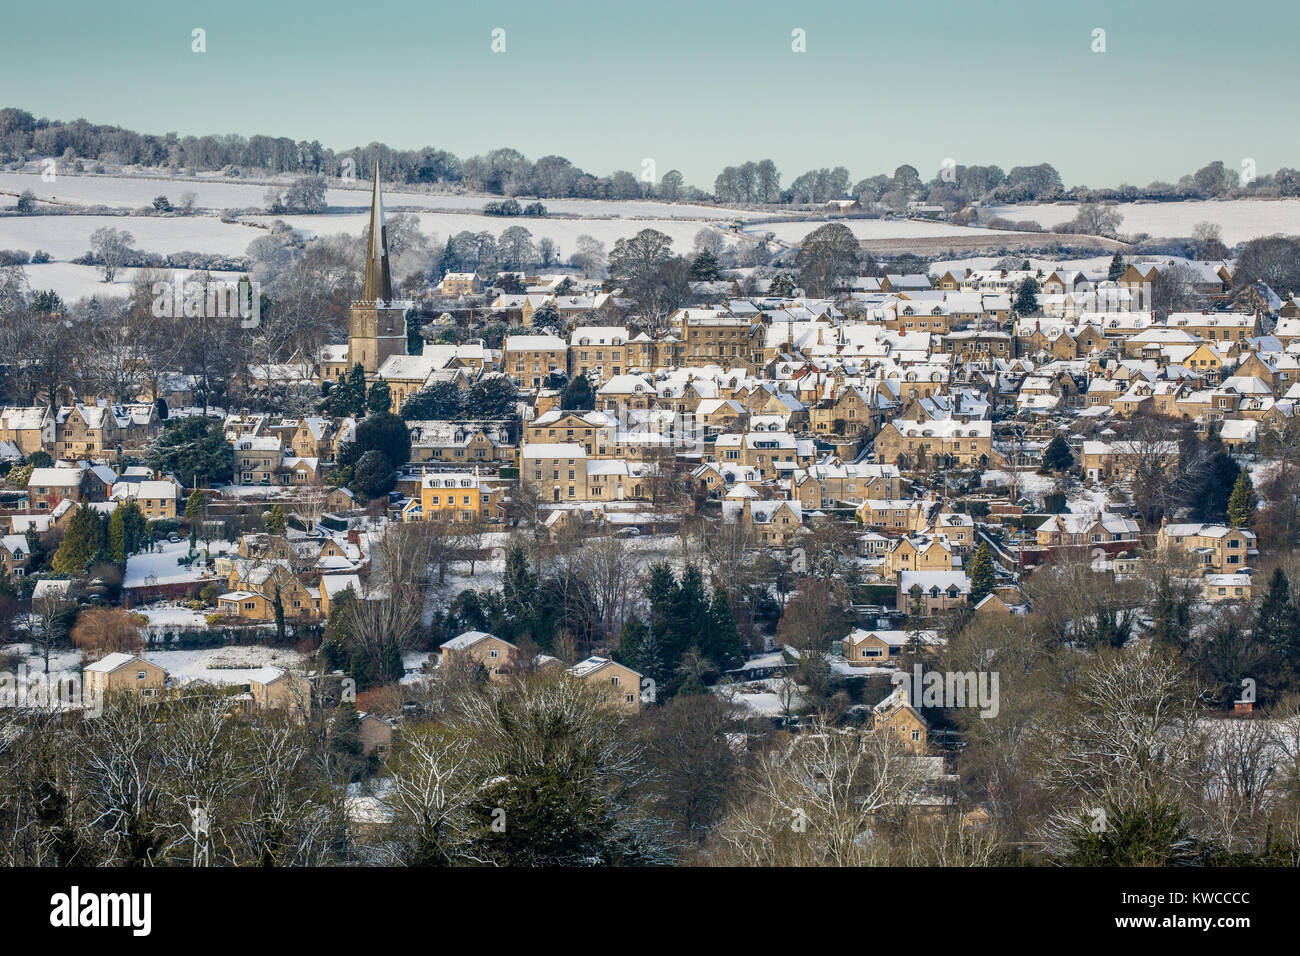 Le pittoresque village de Painswick dans les Cotswolds après une chute de neige, Gloucestershire, Royaume-Uni Banque D'Images